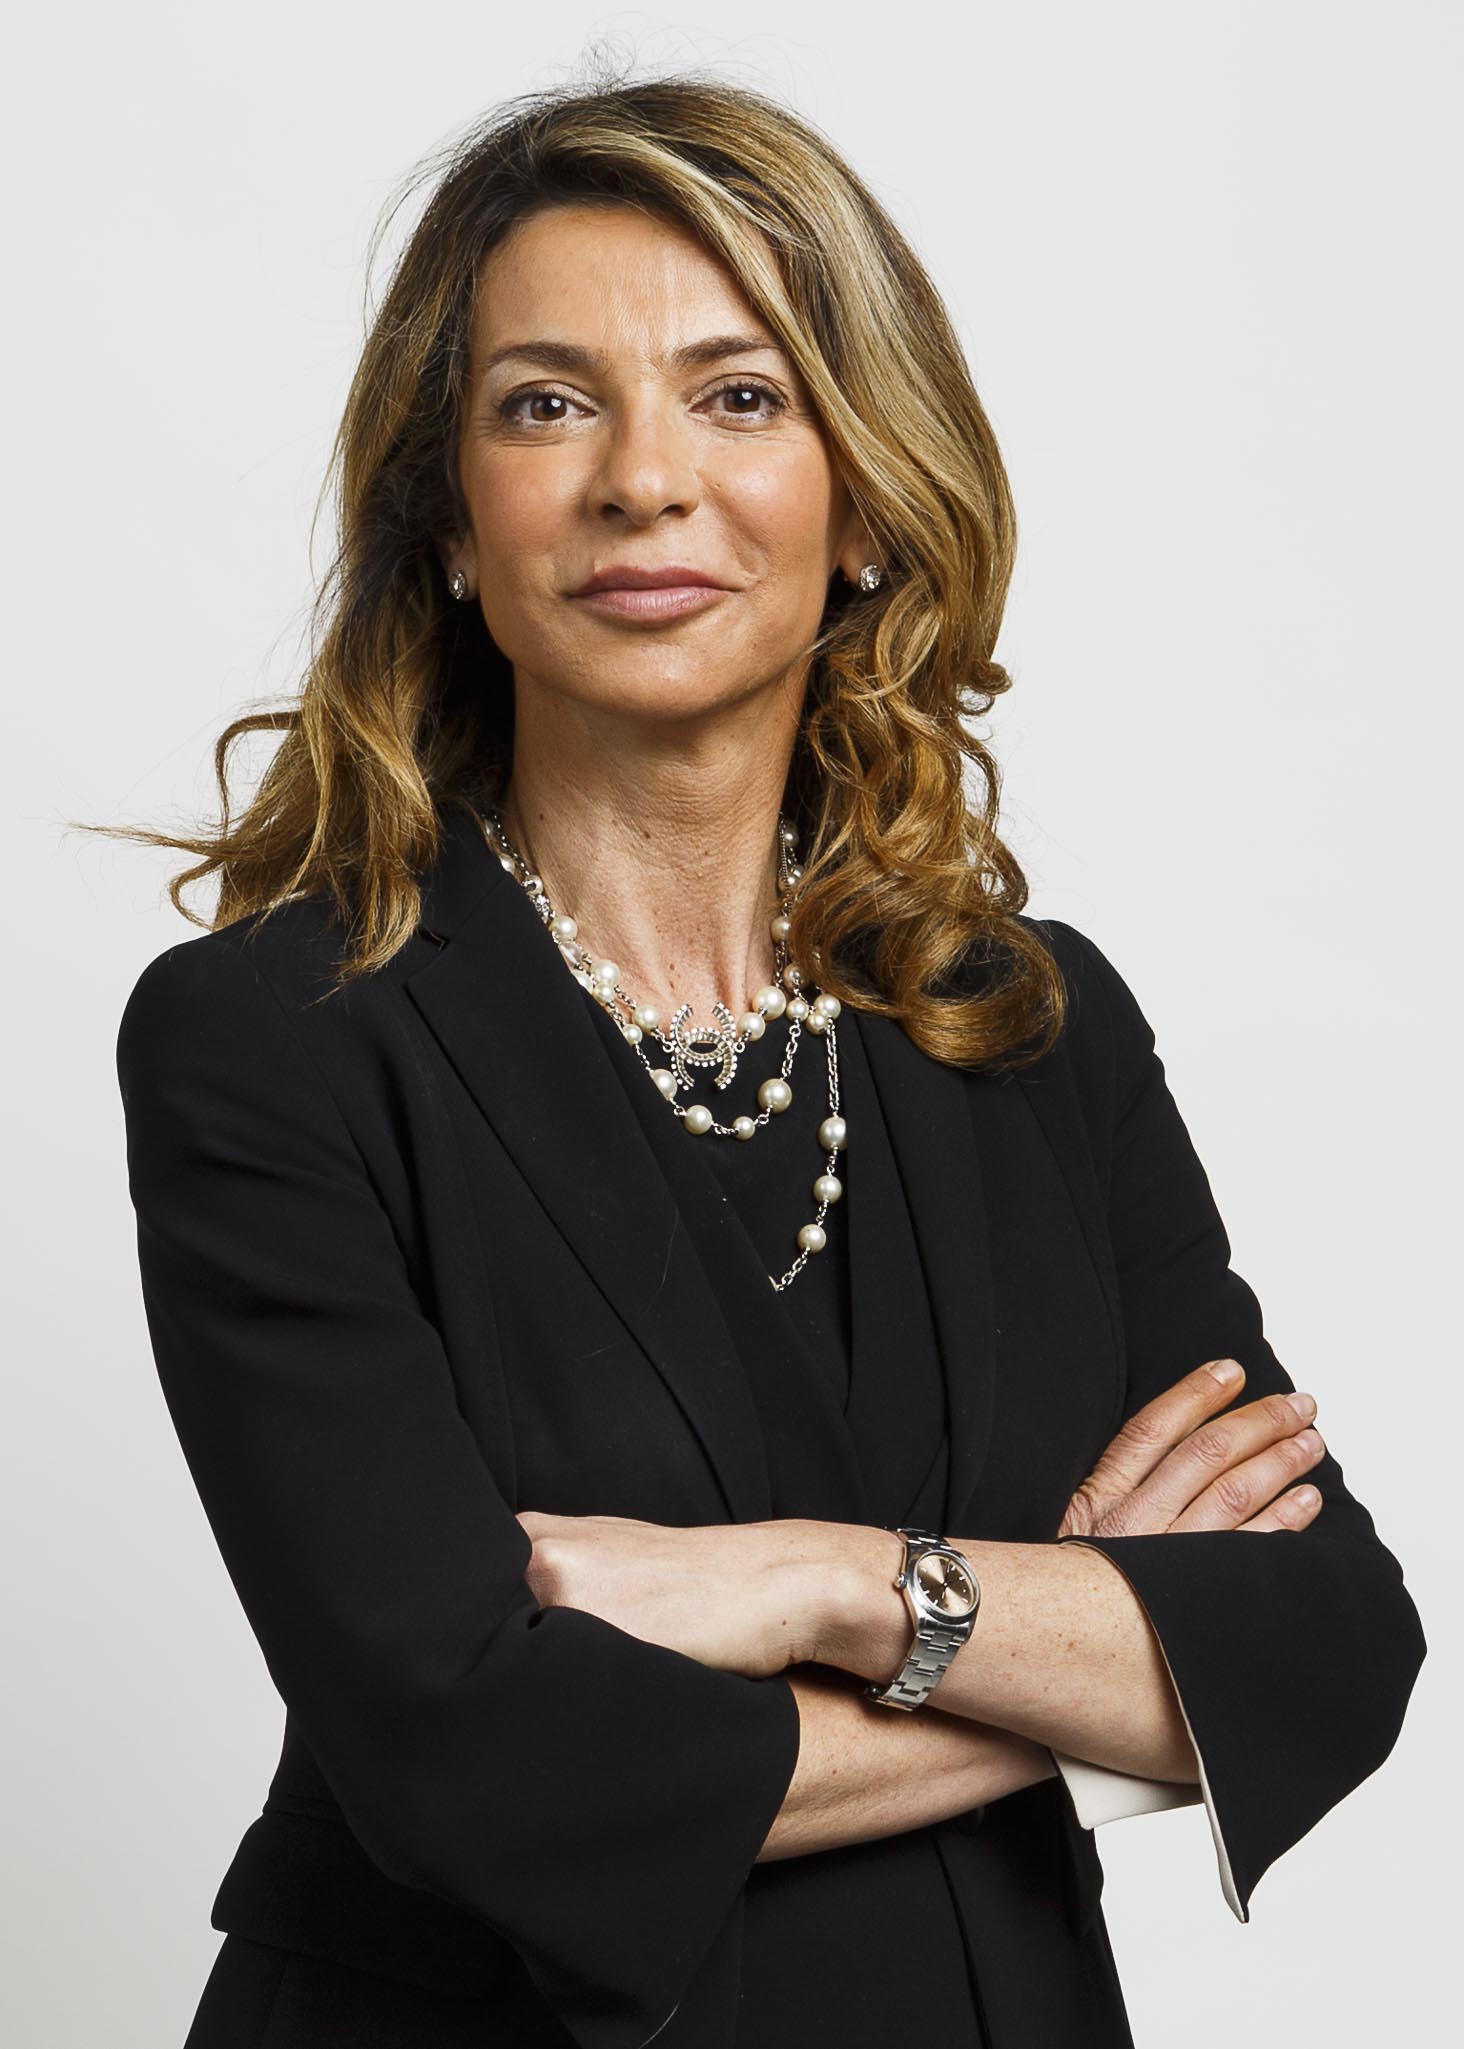 Barbara Cominelli è il nuovo Direttore Marketing & Operations